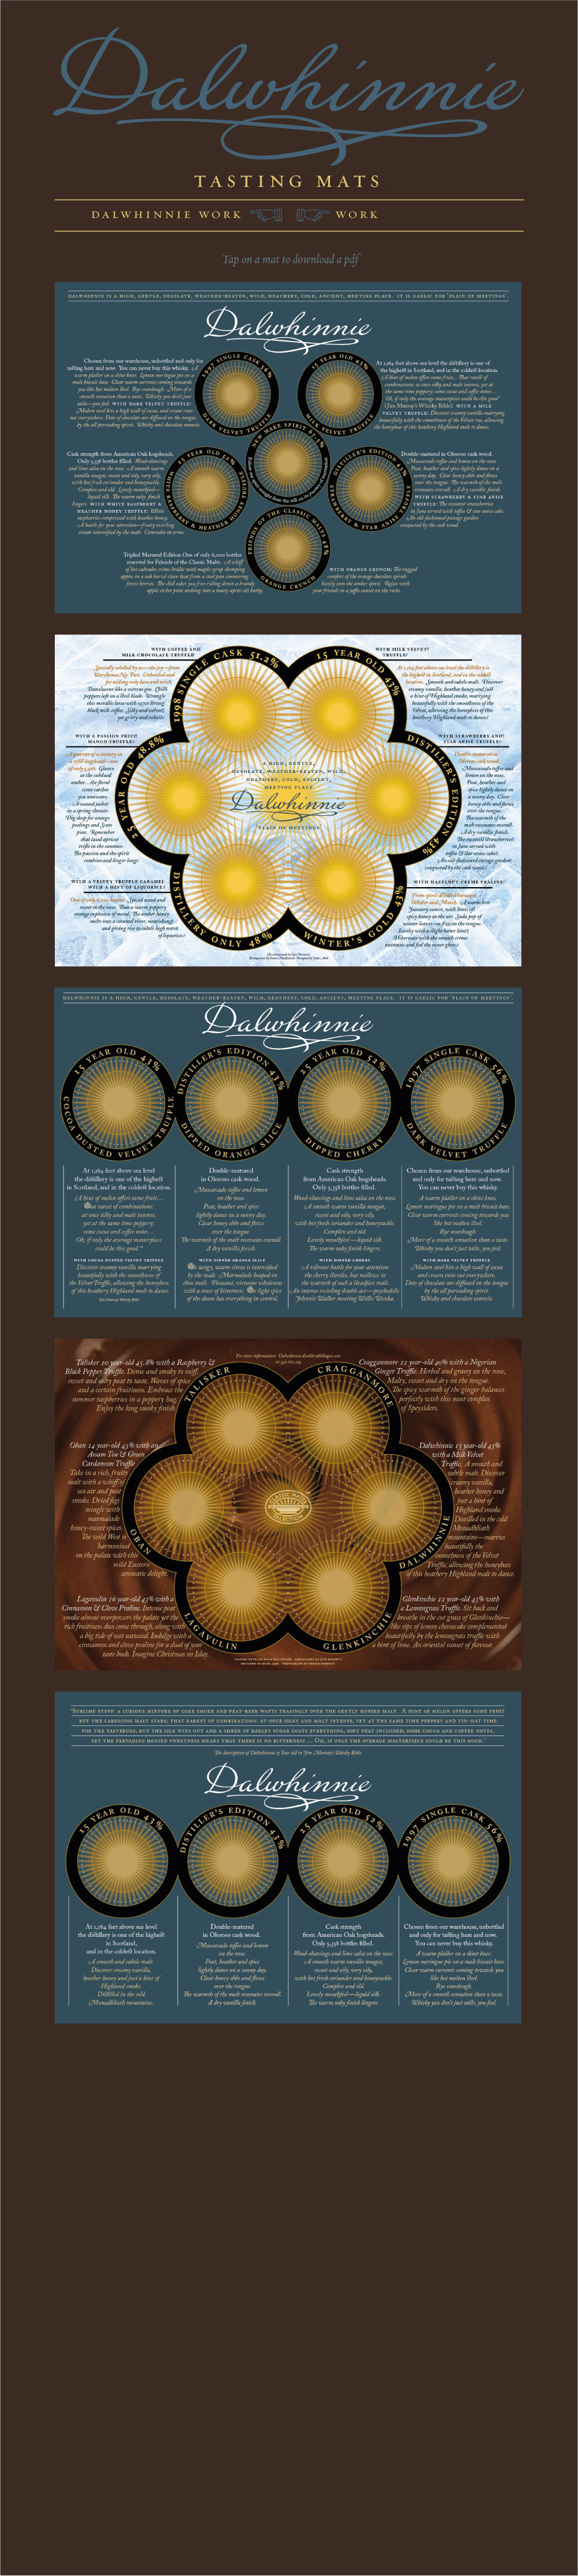 Scottish packaging designer whisky design